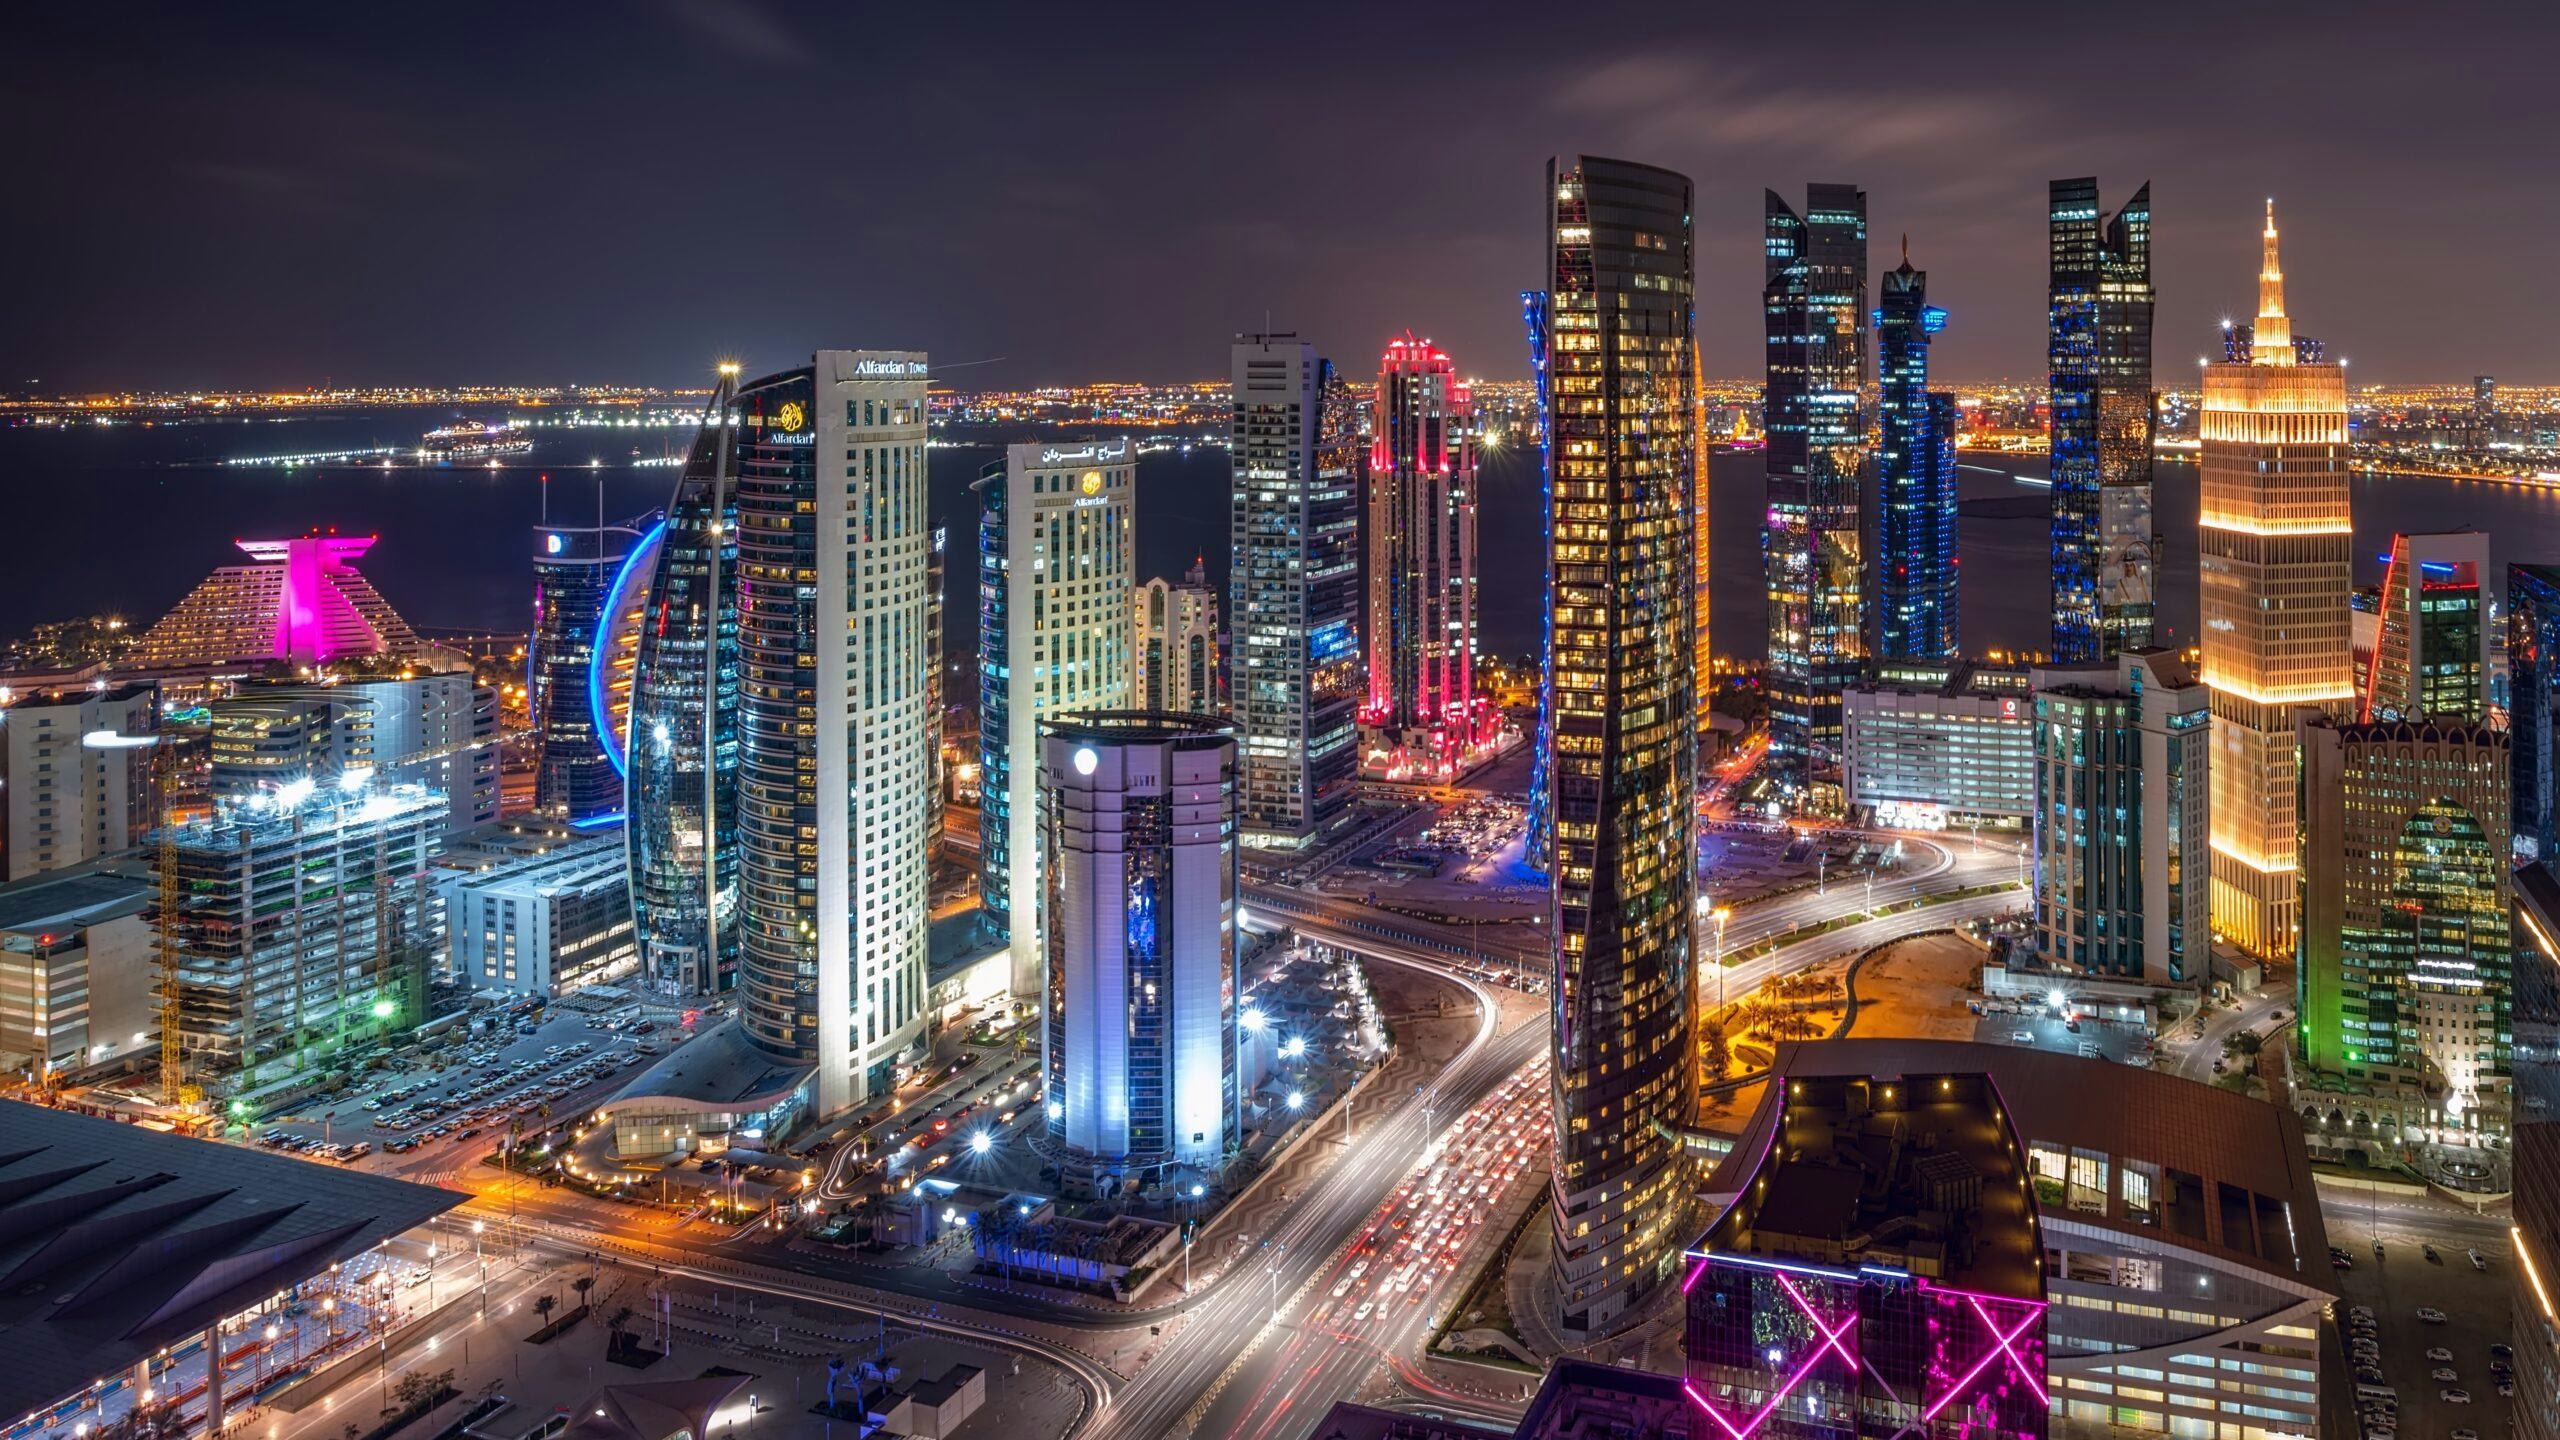 De skyline van Doha, de hoofdstad van Qatar